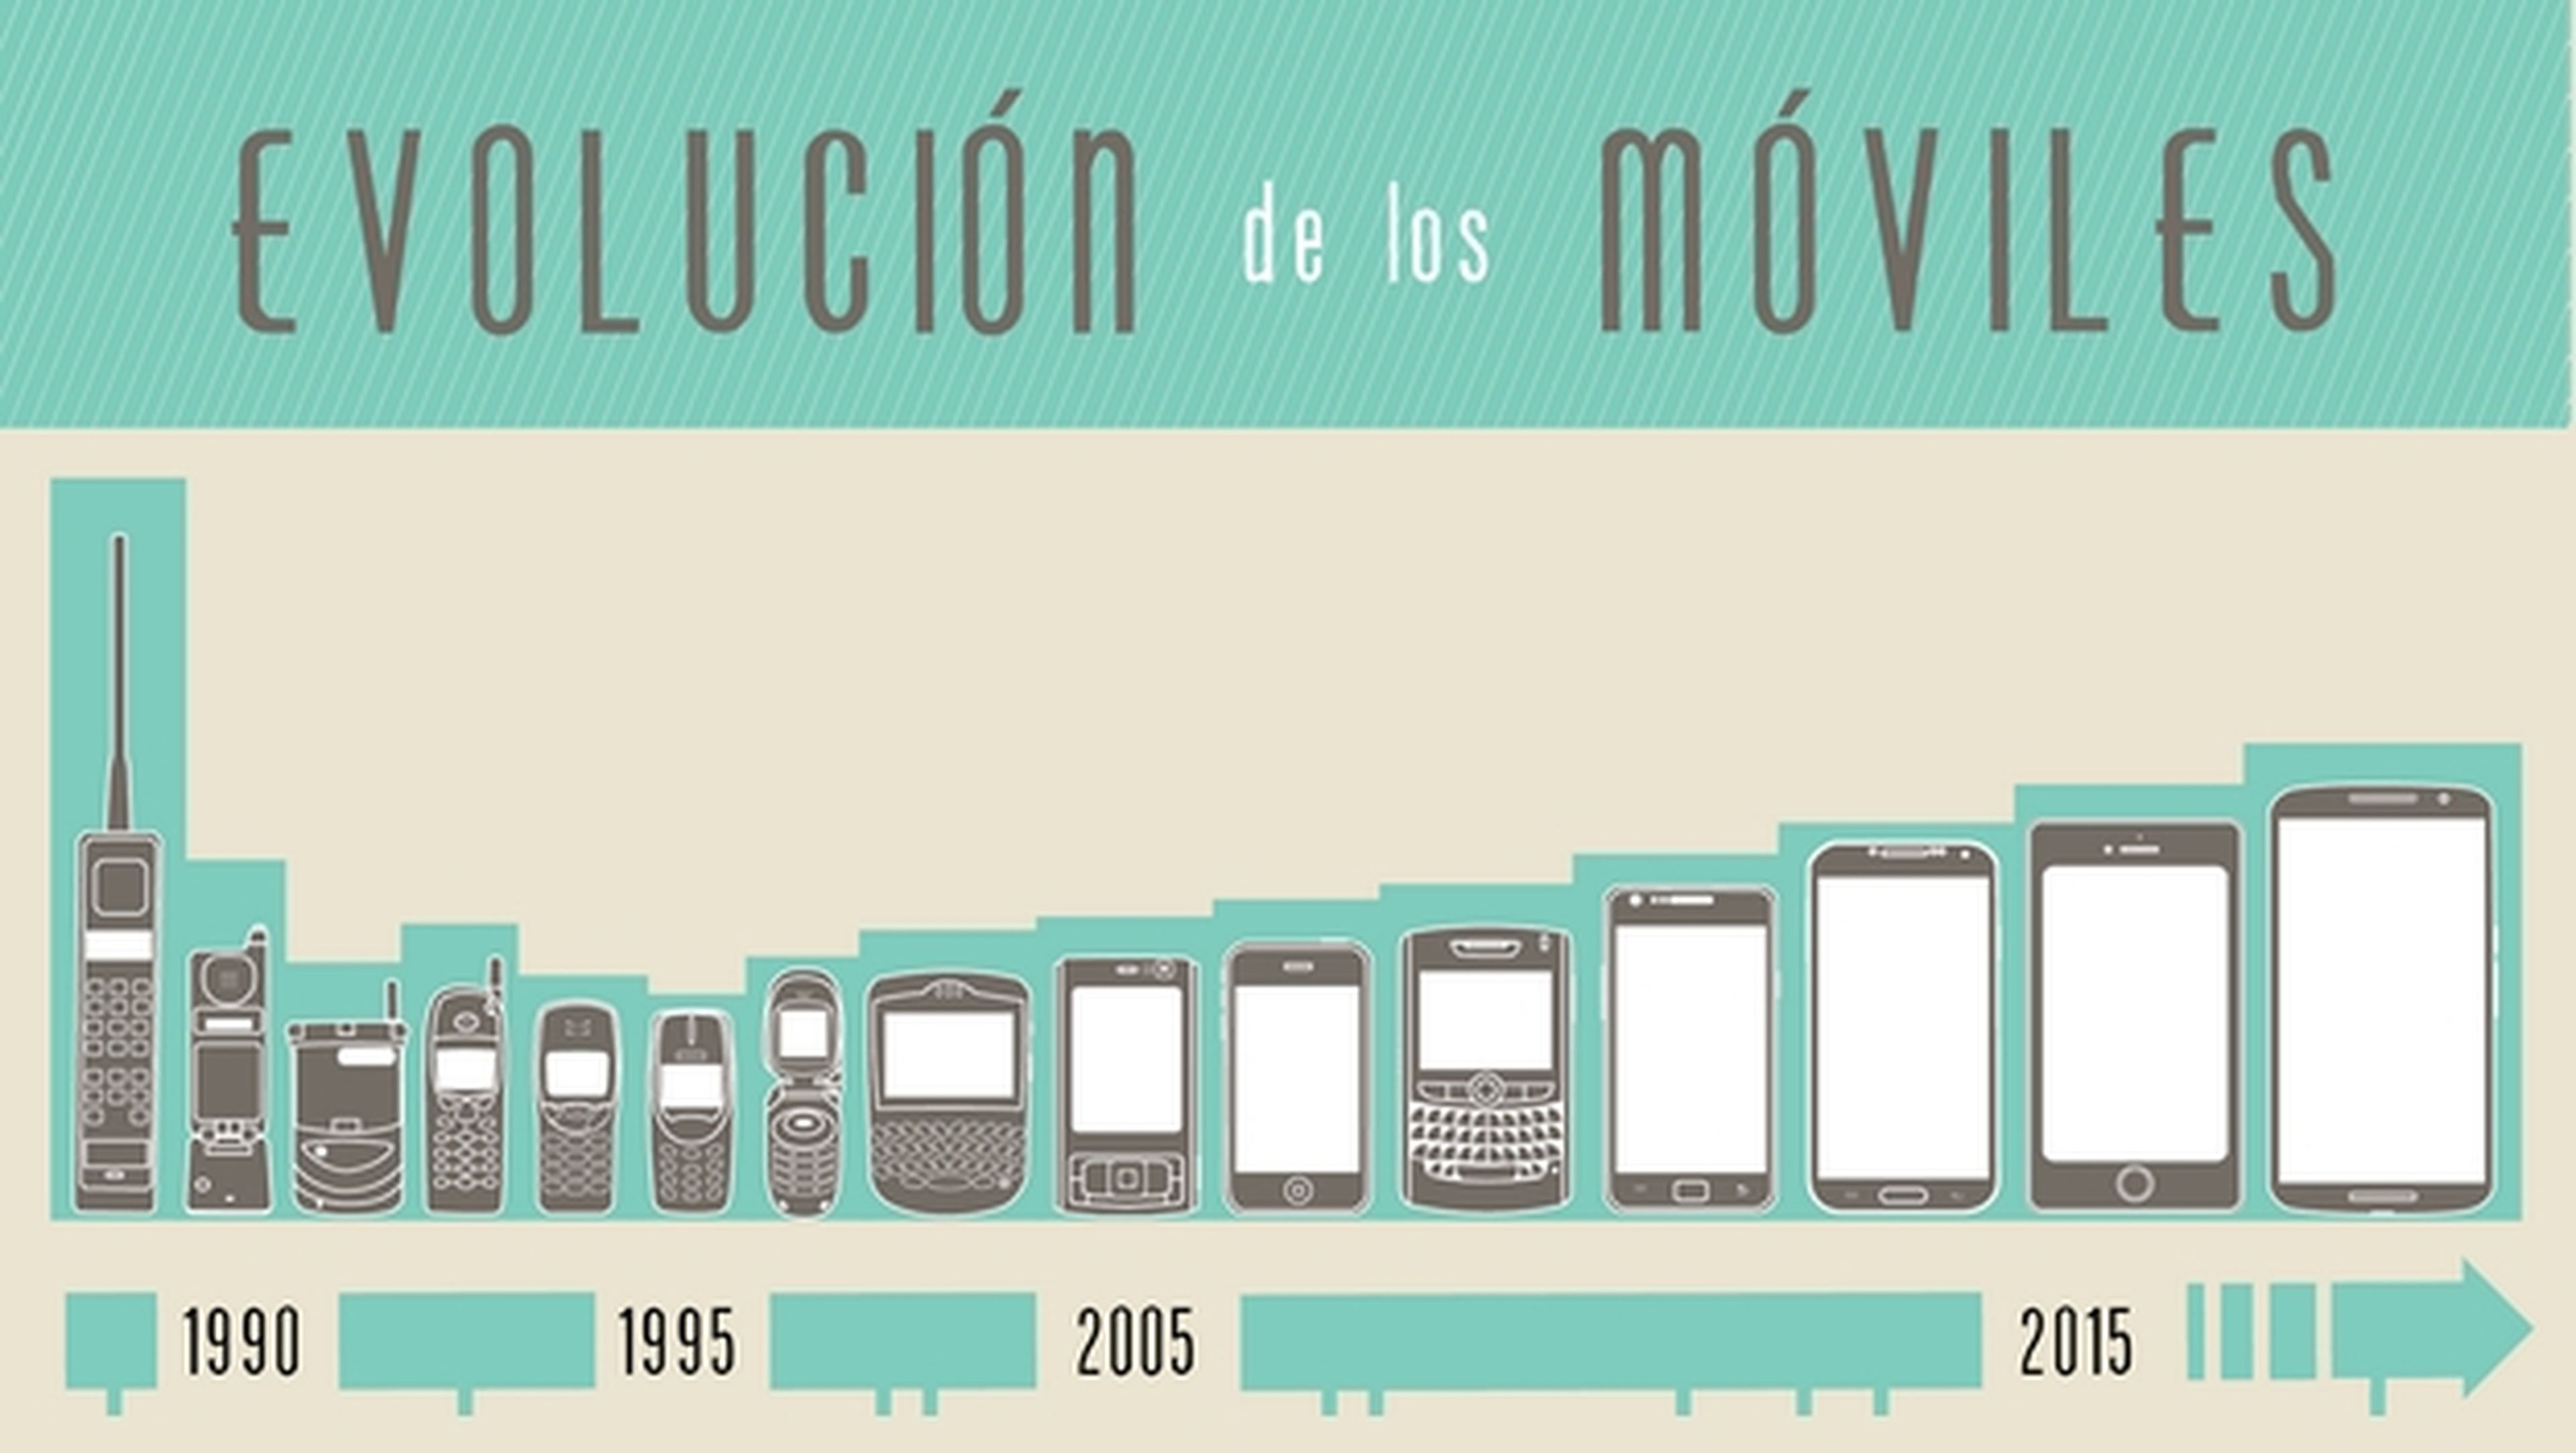 Evolución de los móviles: el comparador ValorTop analiza los 8 modelos más revolucionarios de la historia.